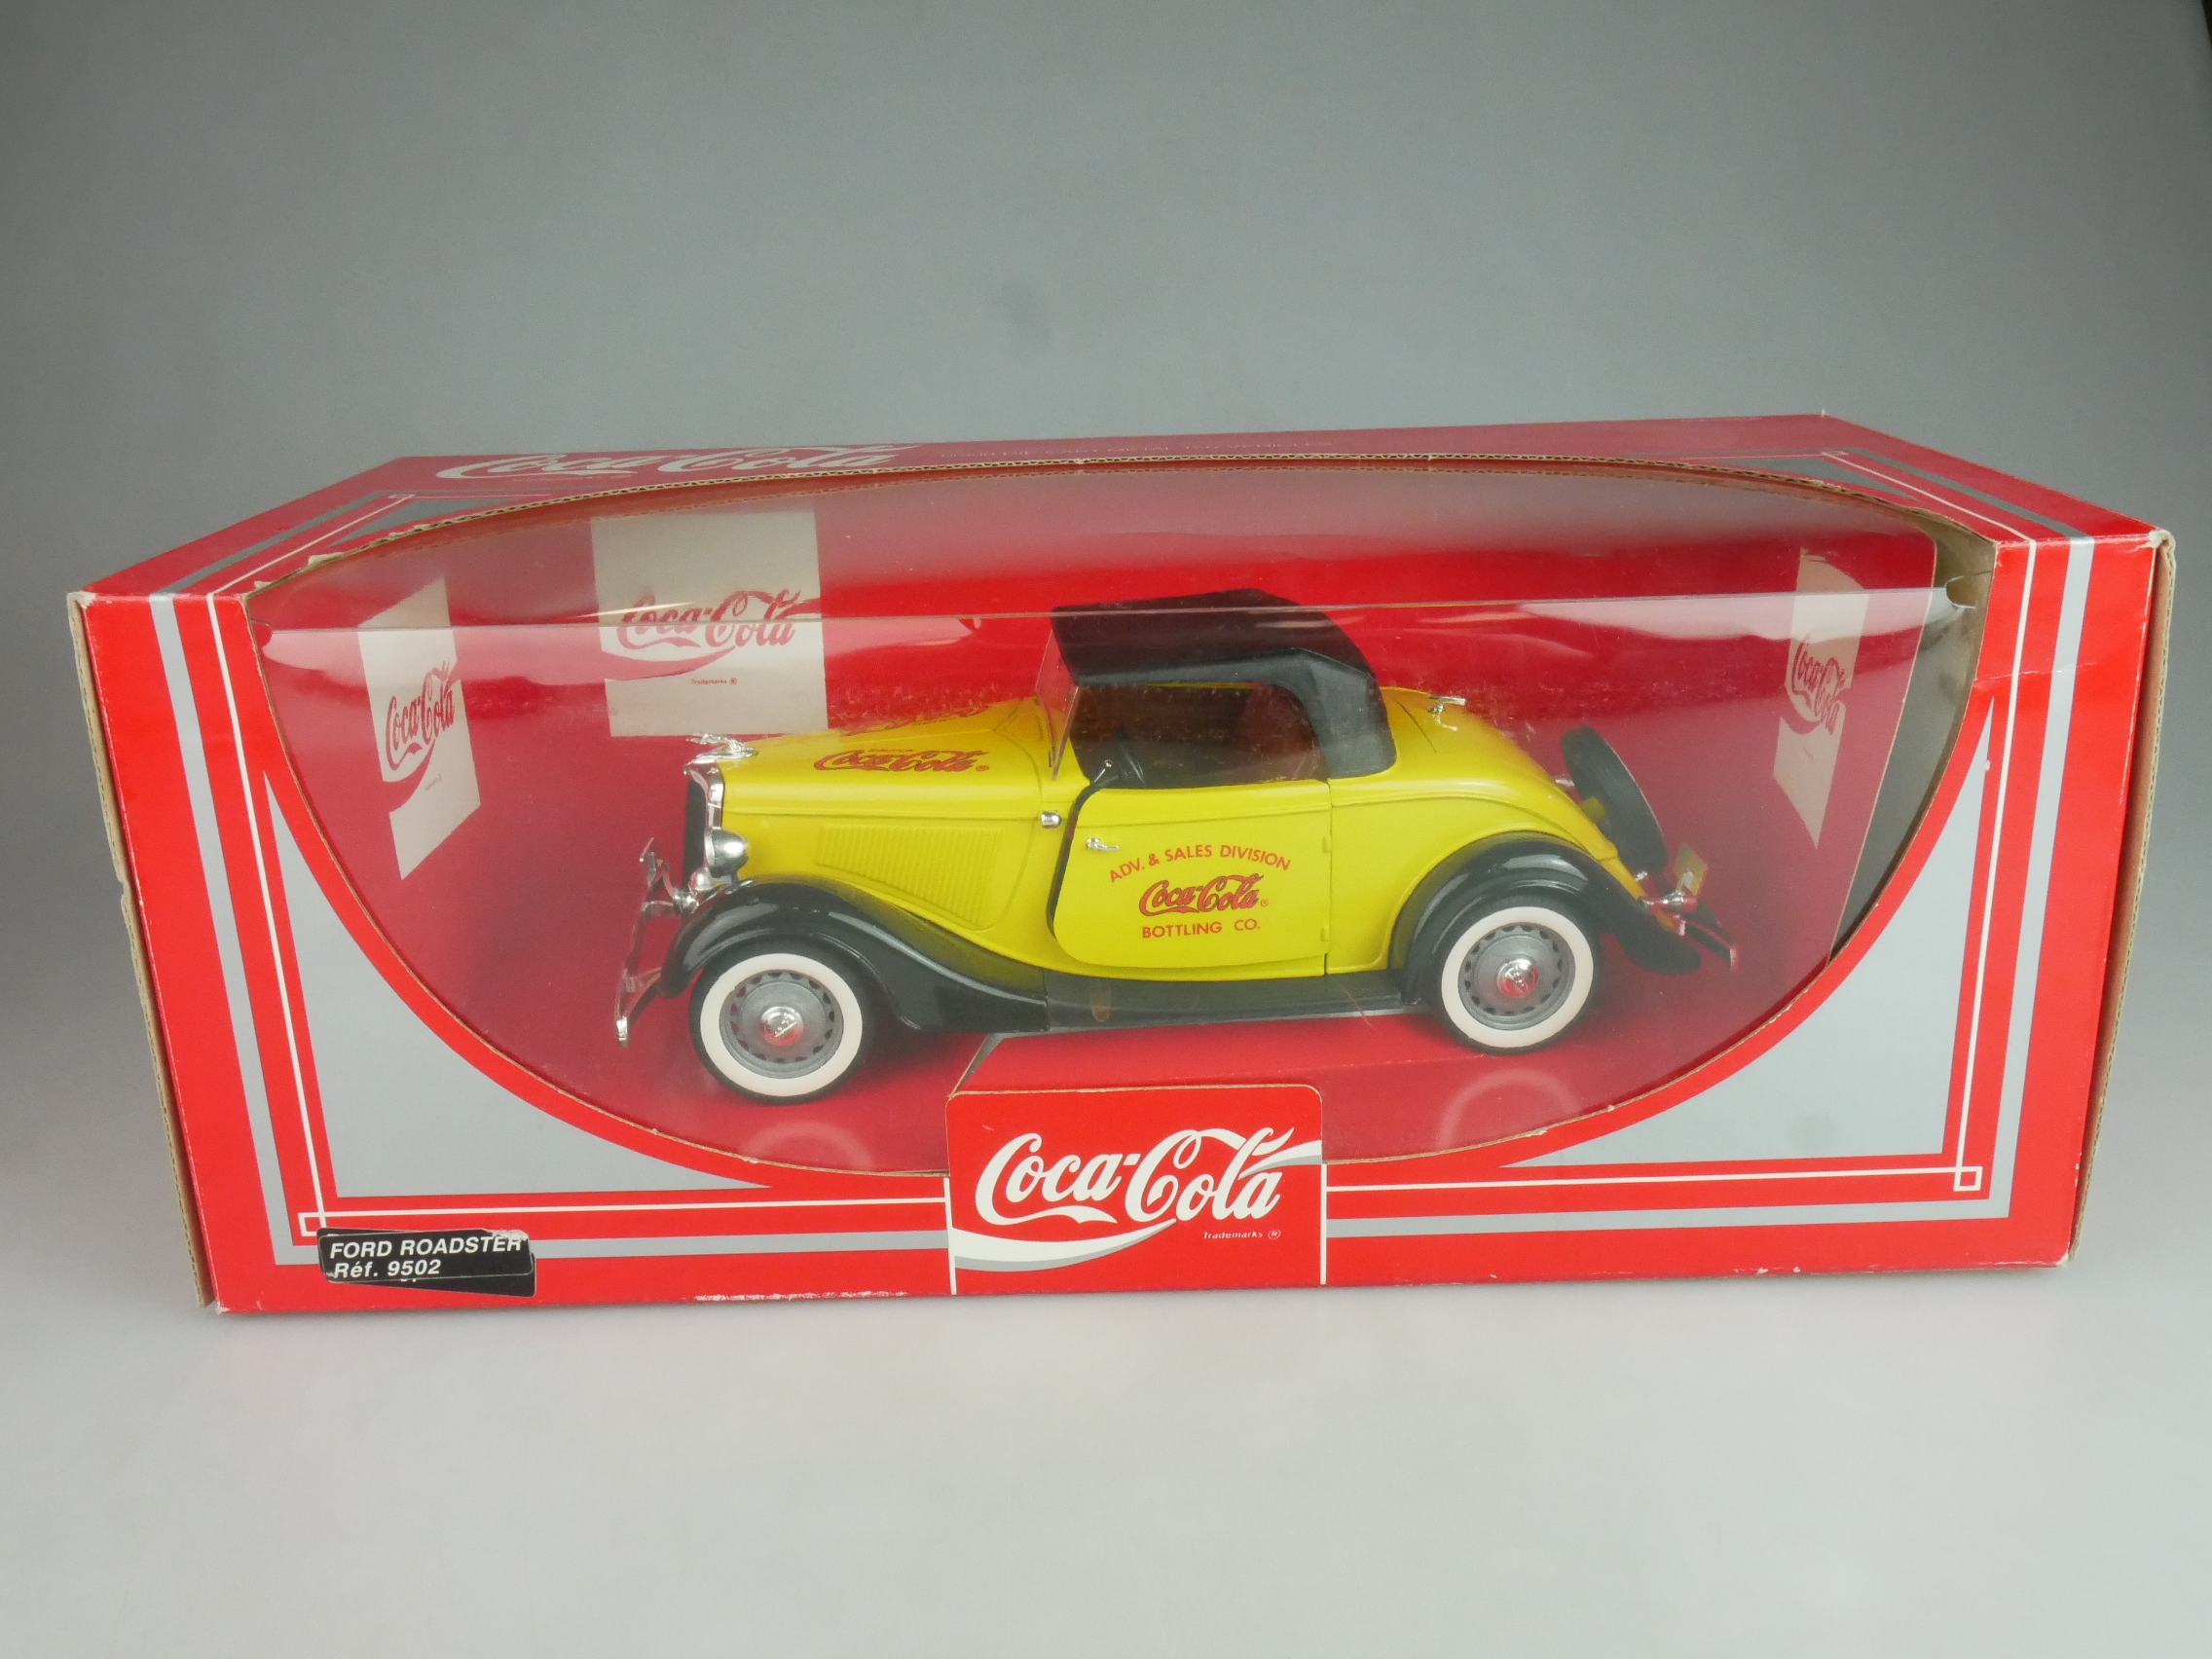 Solido 1/18 Ford Roadster Coca-Cola 9502 + Box 125648